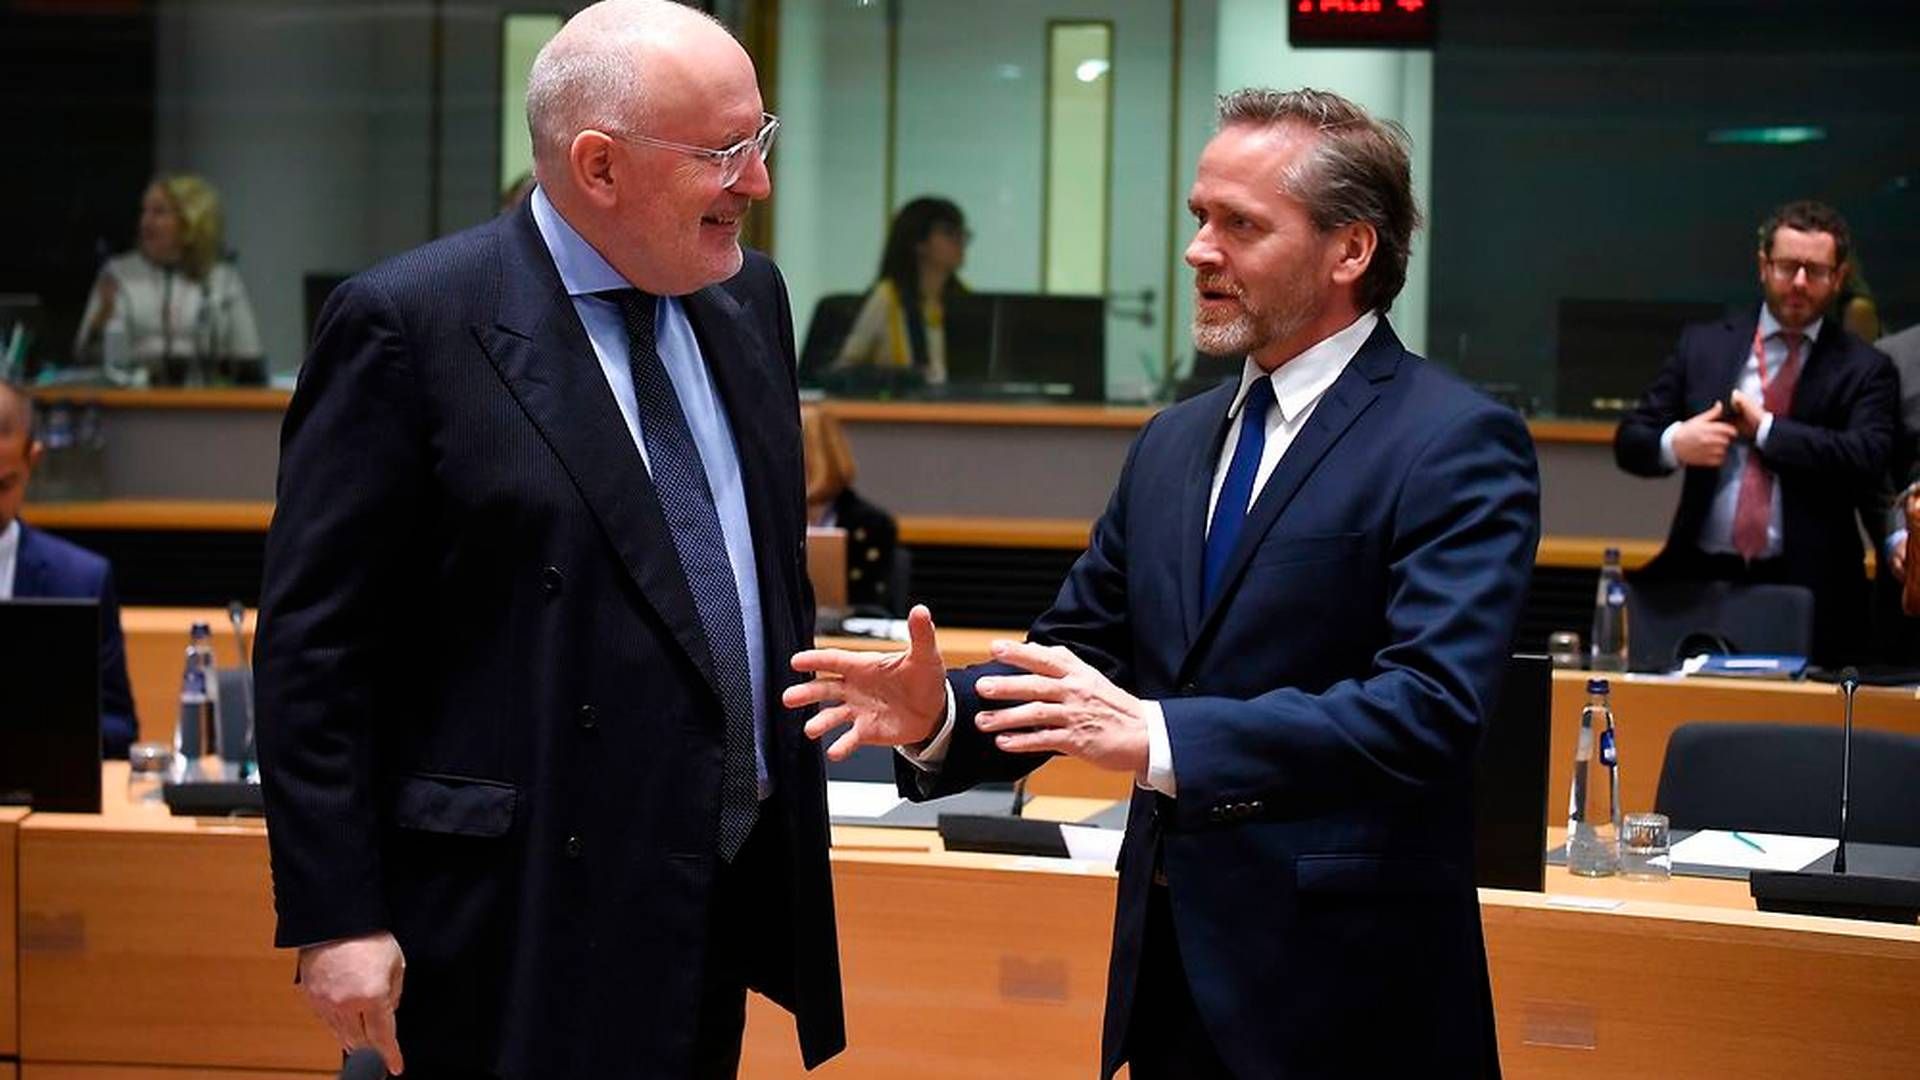 Den danske udenrigsminister, Anders Samuelsen (LA), talte blandt andet med EU-kommissionens vicepræsident Frans Timmermans under mødet i Bruxelles. | Foto: John Thys/Ritzau Scanpix